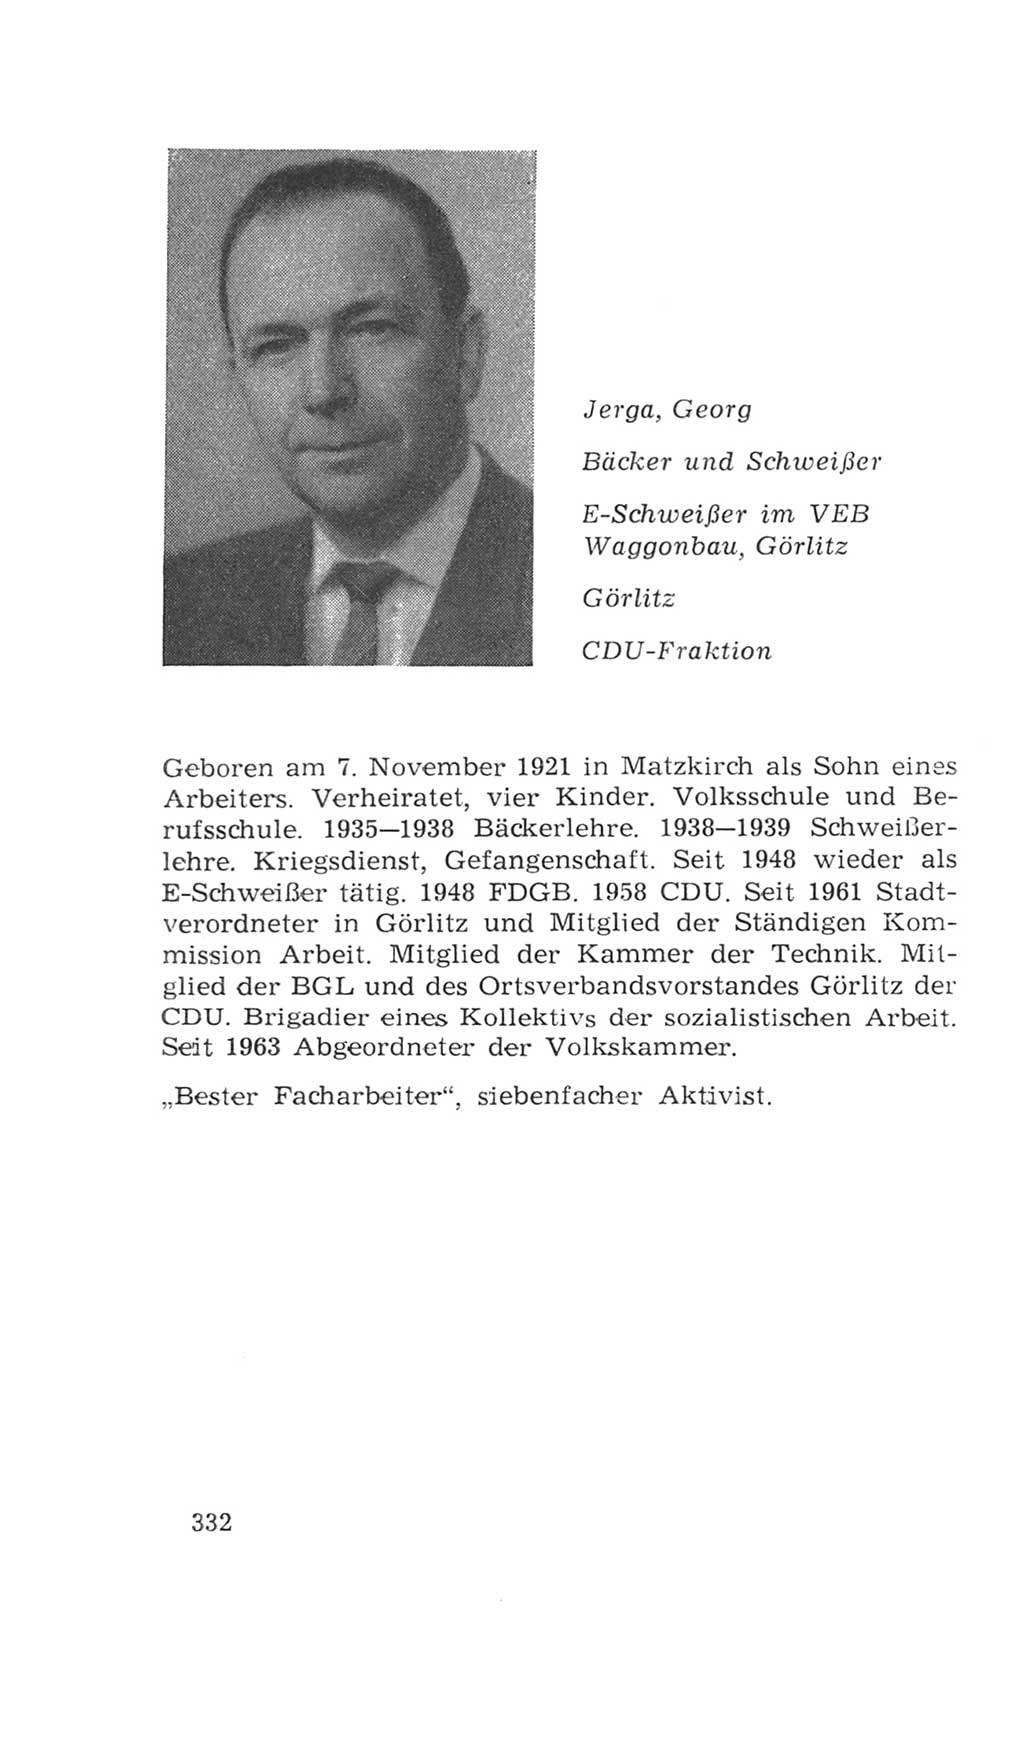 Volkskammer (VK) der Deutschen Demokratischen Republik (DDR), 4. Wahlperiode 1963-1967, Seite 332 (VK. DDR 4. WP. 1963-1967, S. 332)